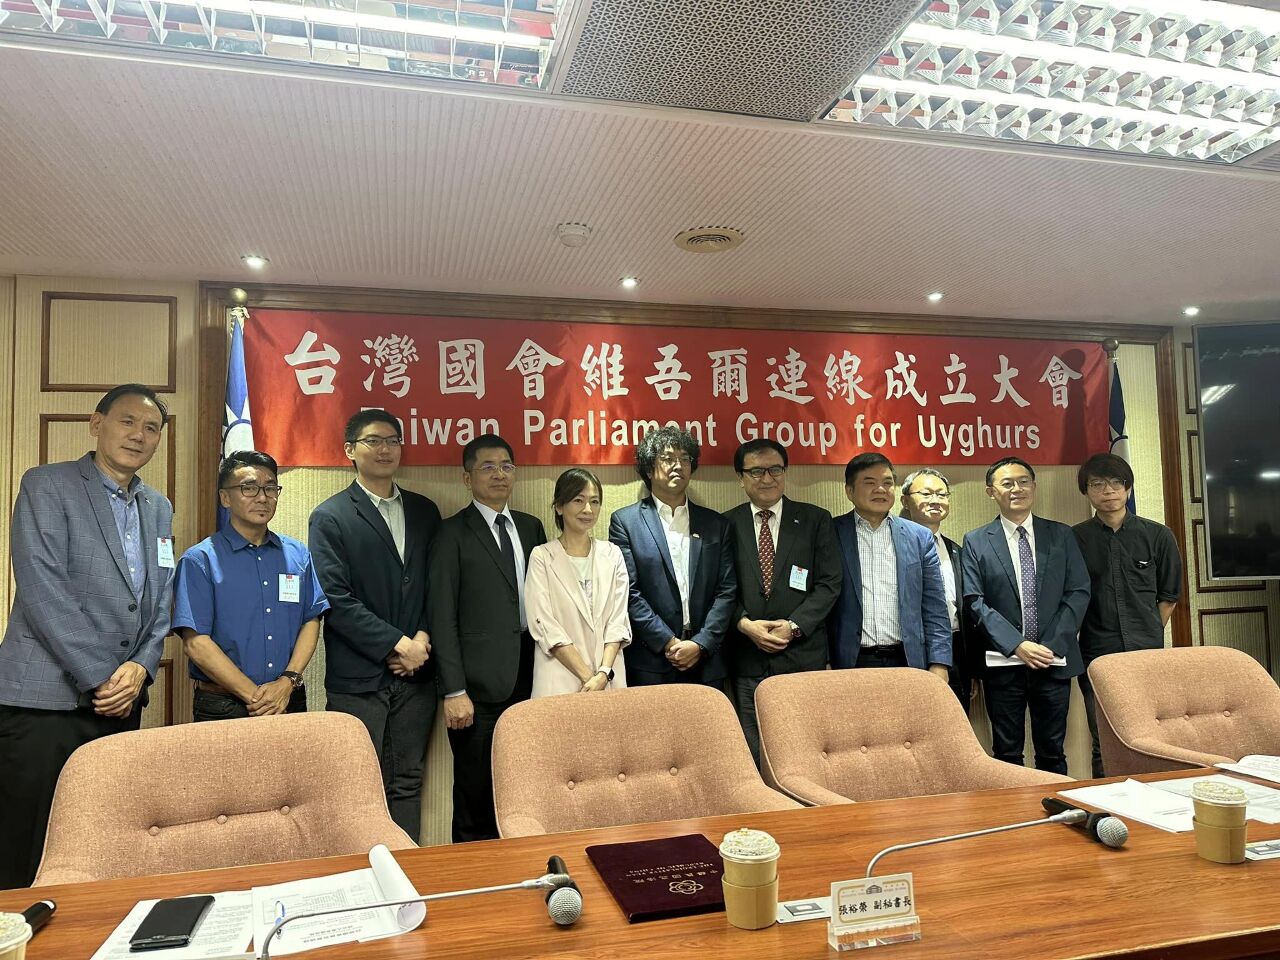 台灣國會維吾爾連線成立 主張堅持民主人權普世價值